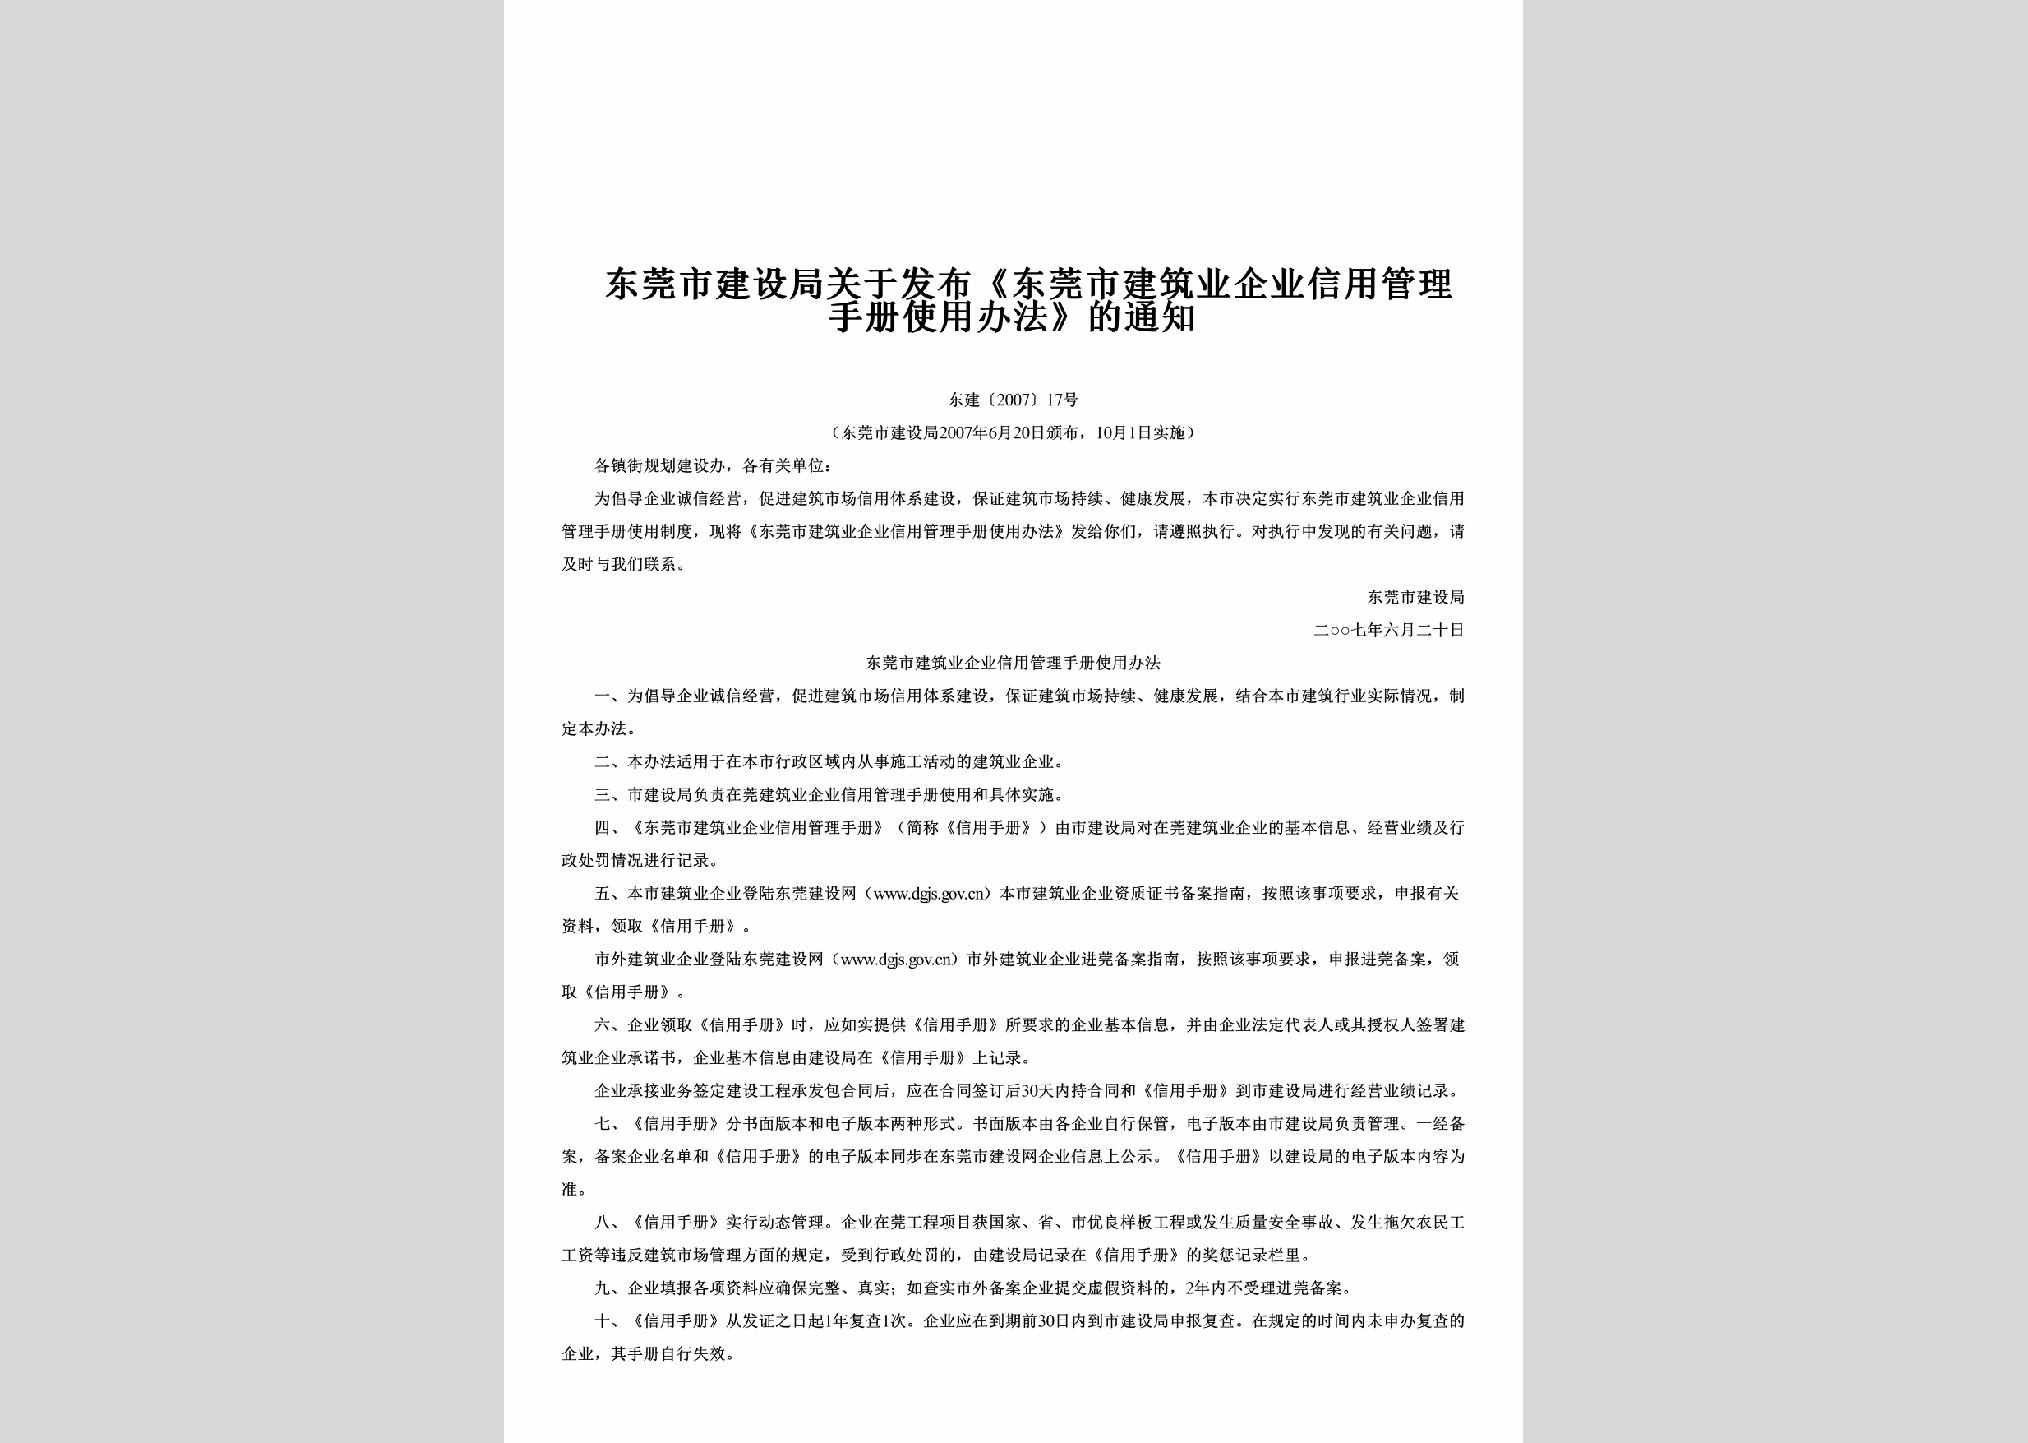 东建[2007]17号：关于发布《东莞市建筑业企业信用管理手册使用办法》的通知